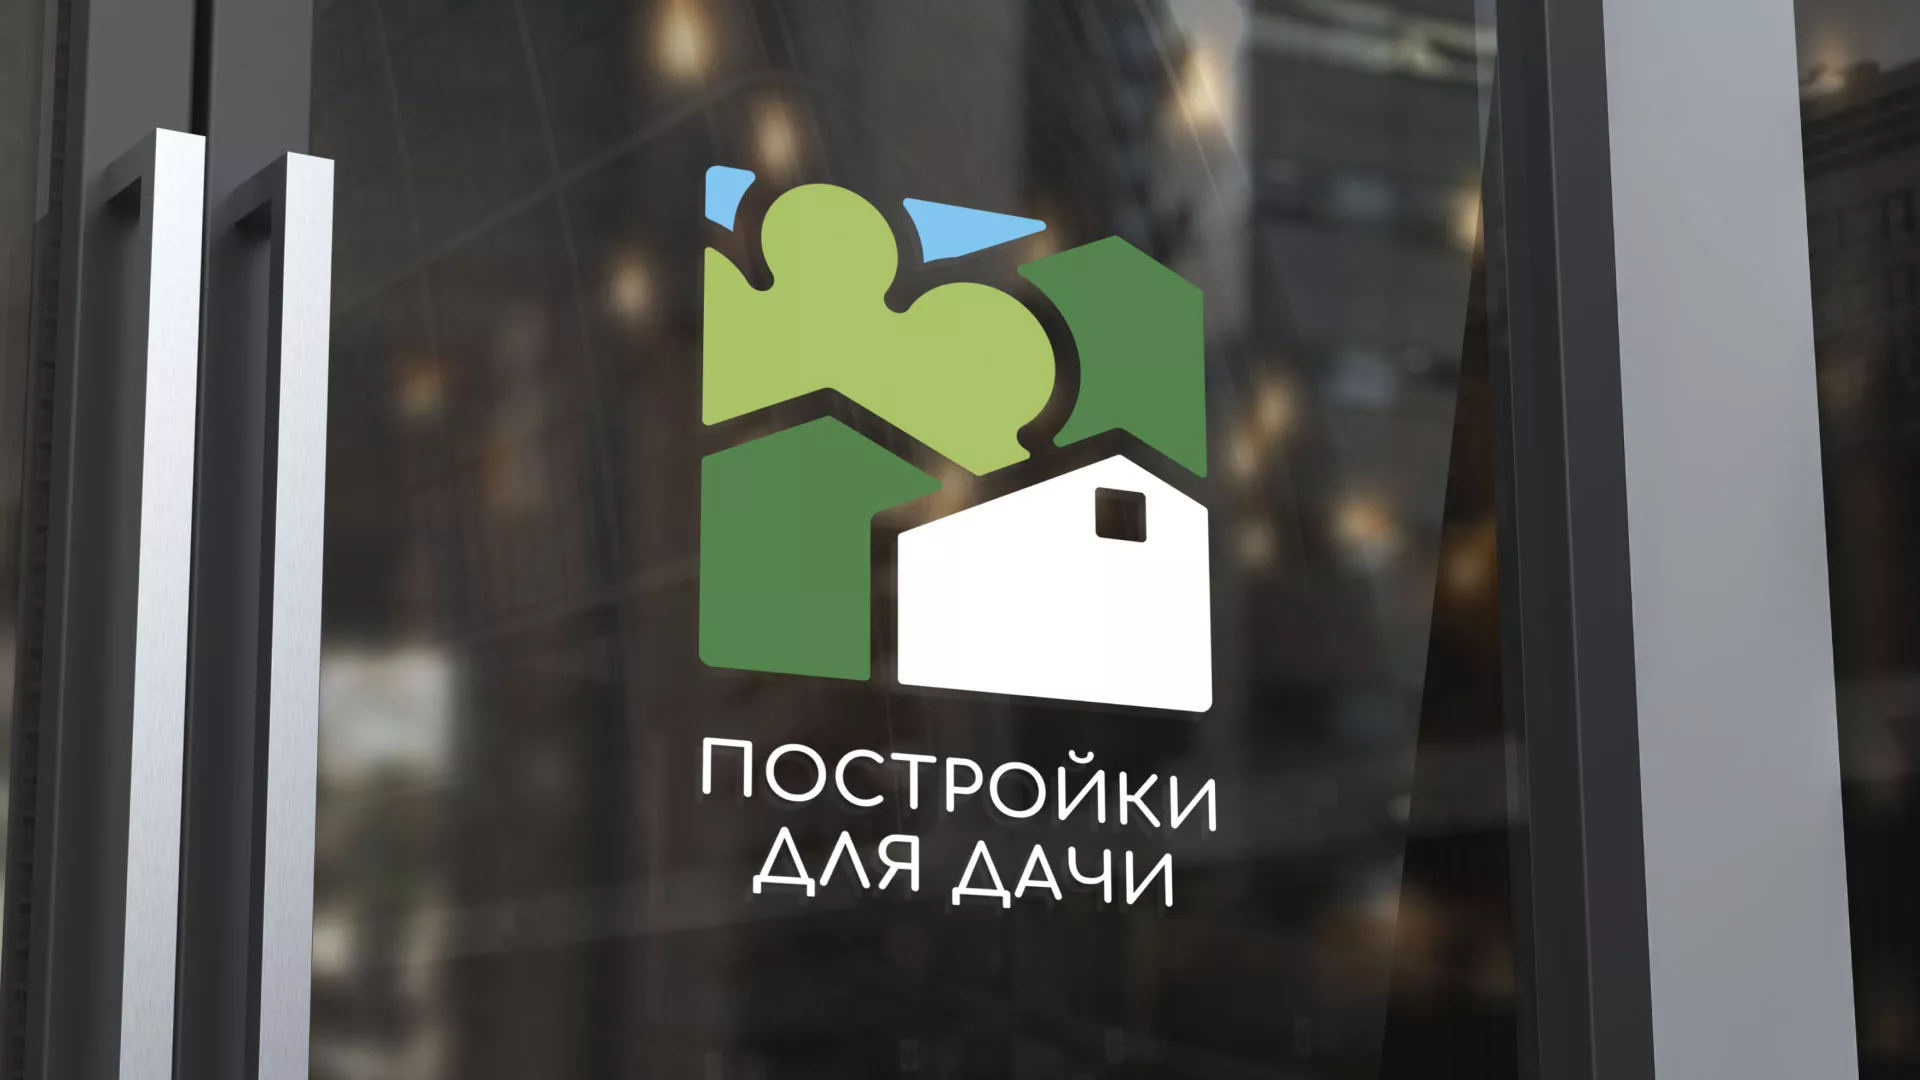 Разработка логотипа в Елизово для компании «Постройки для дачи»